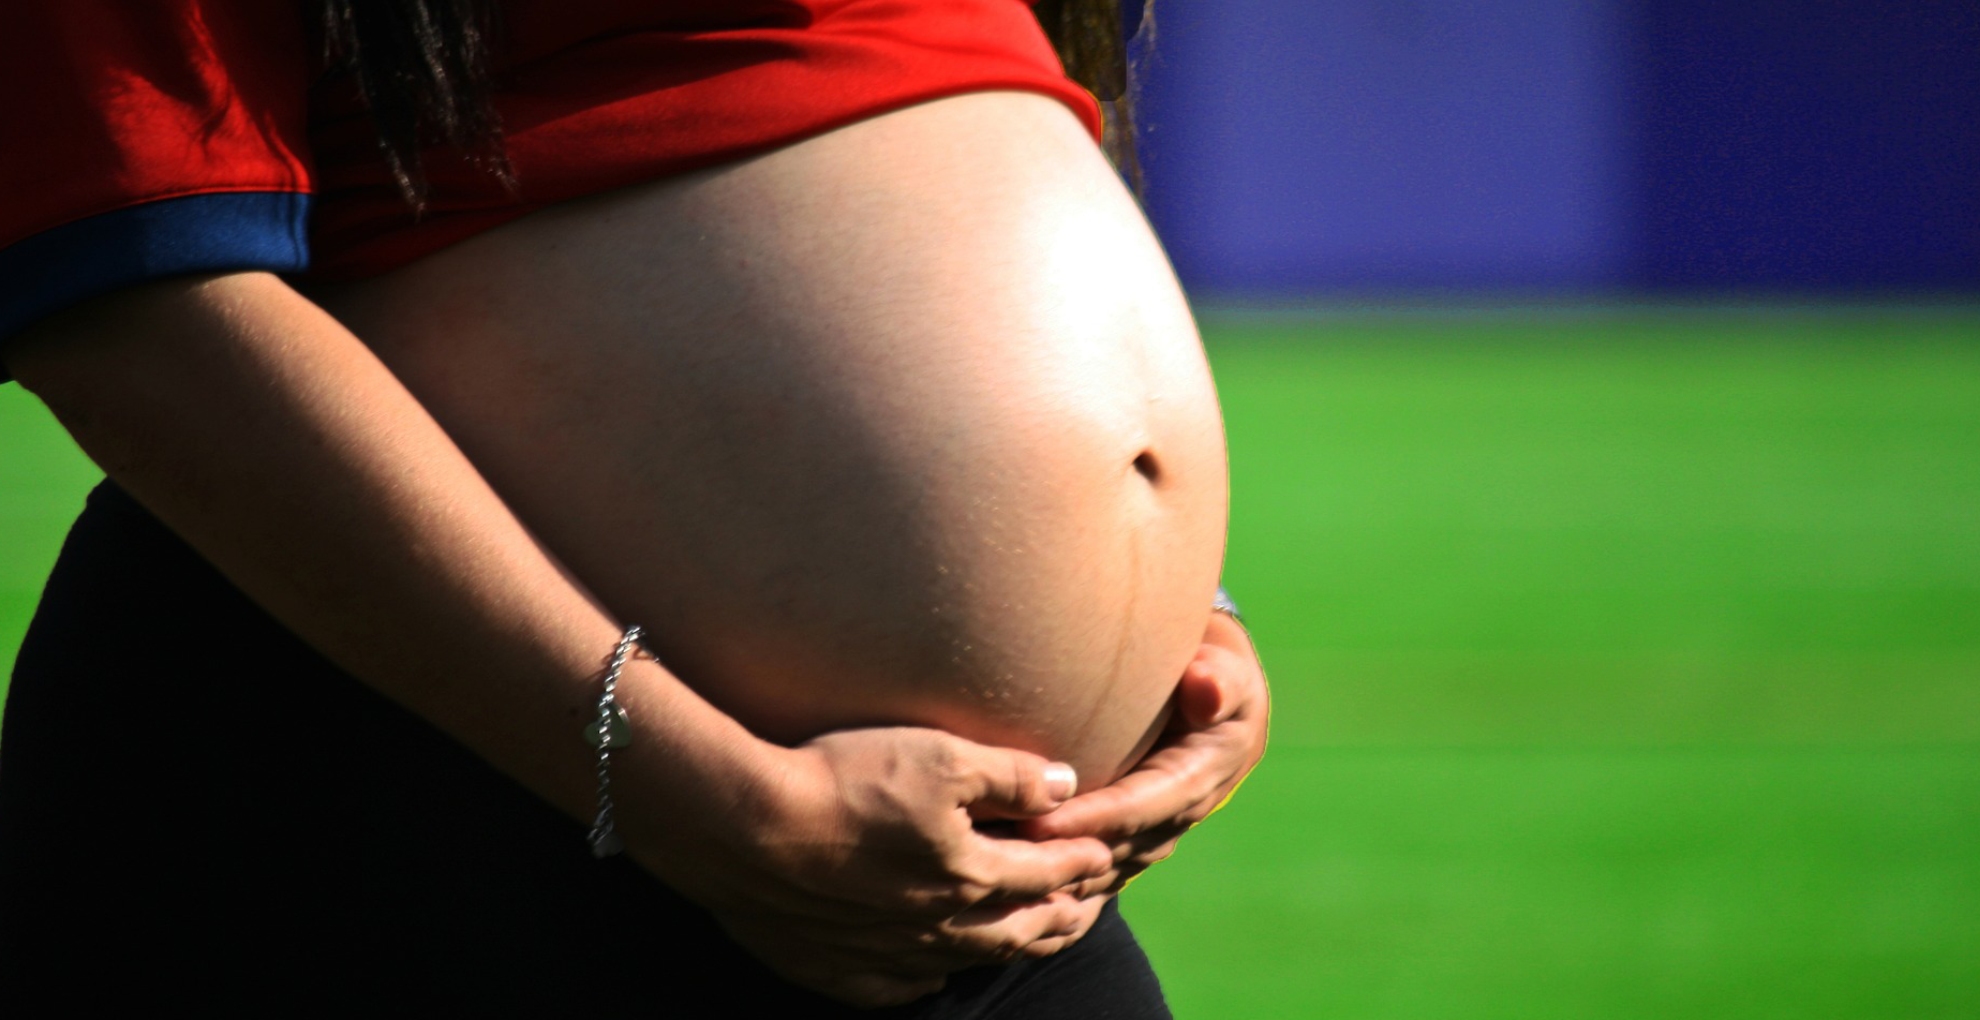 Pregnancy Tips: प्रेग्नेंसी में भूलकर भी ना खाएं ये 5 चीजें, बच्चे को हो सकता है नुकसान